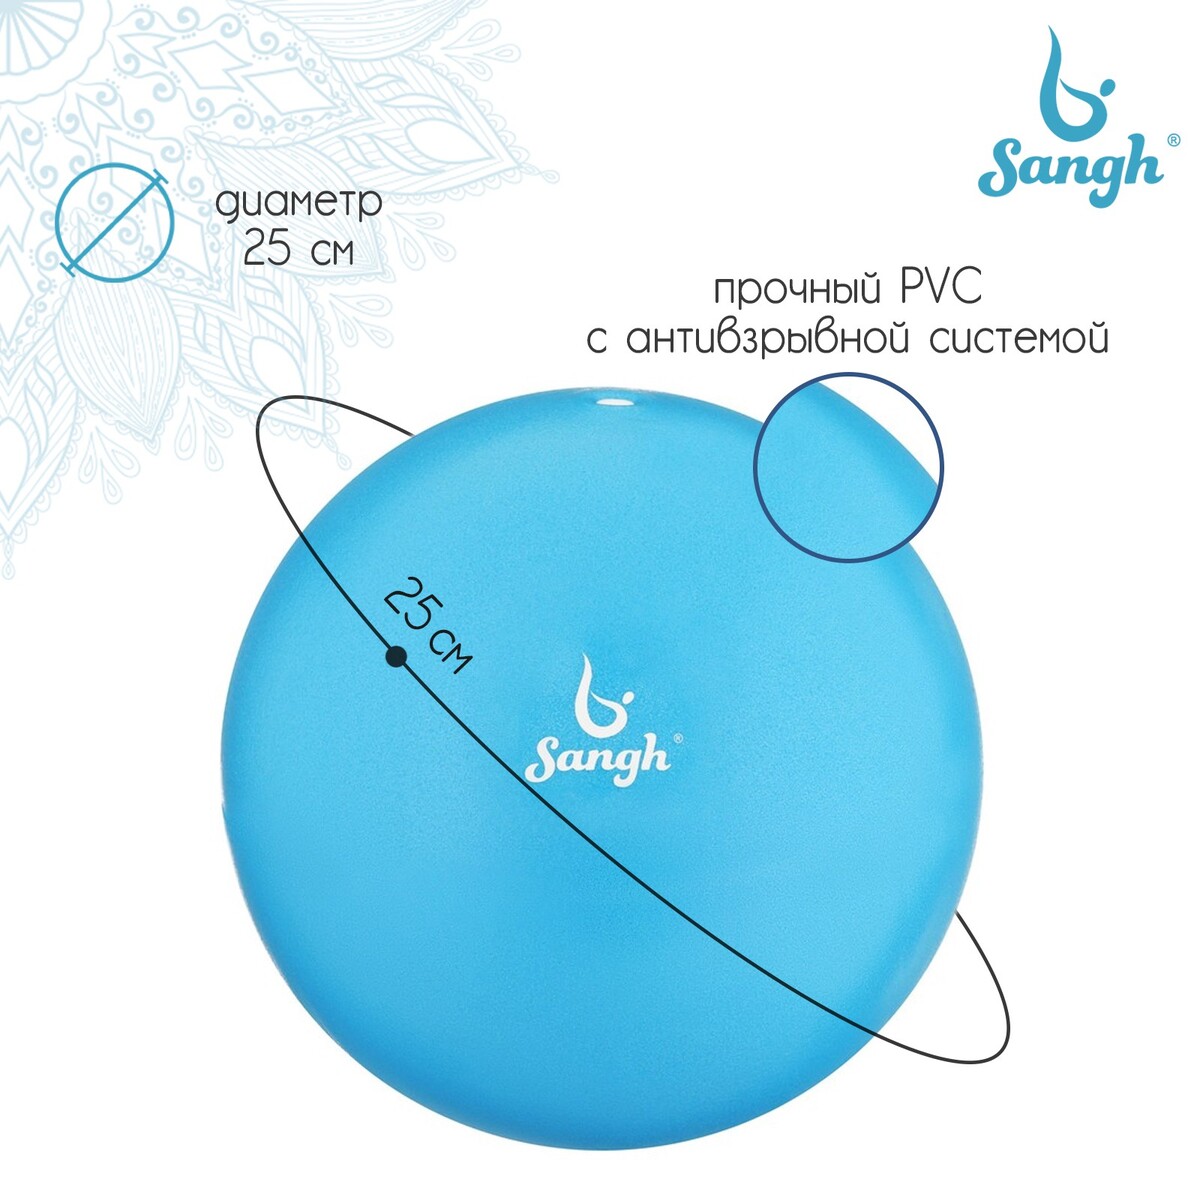 Мяч для йоги sangh, d=25 см, 100 г, цвет синий